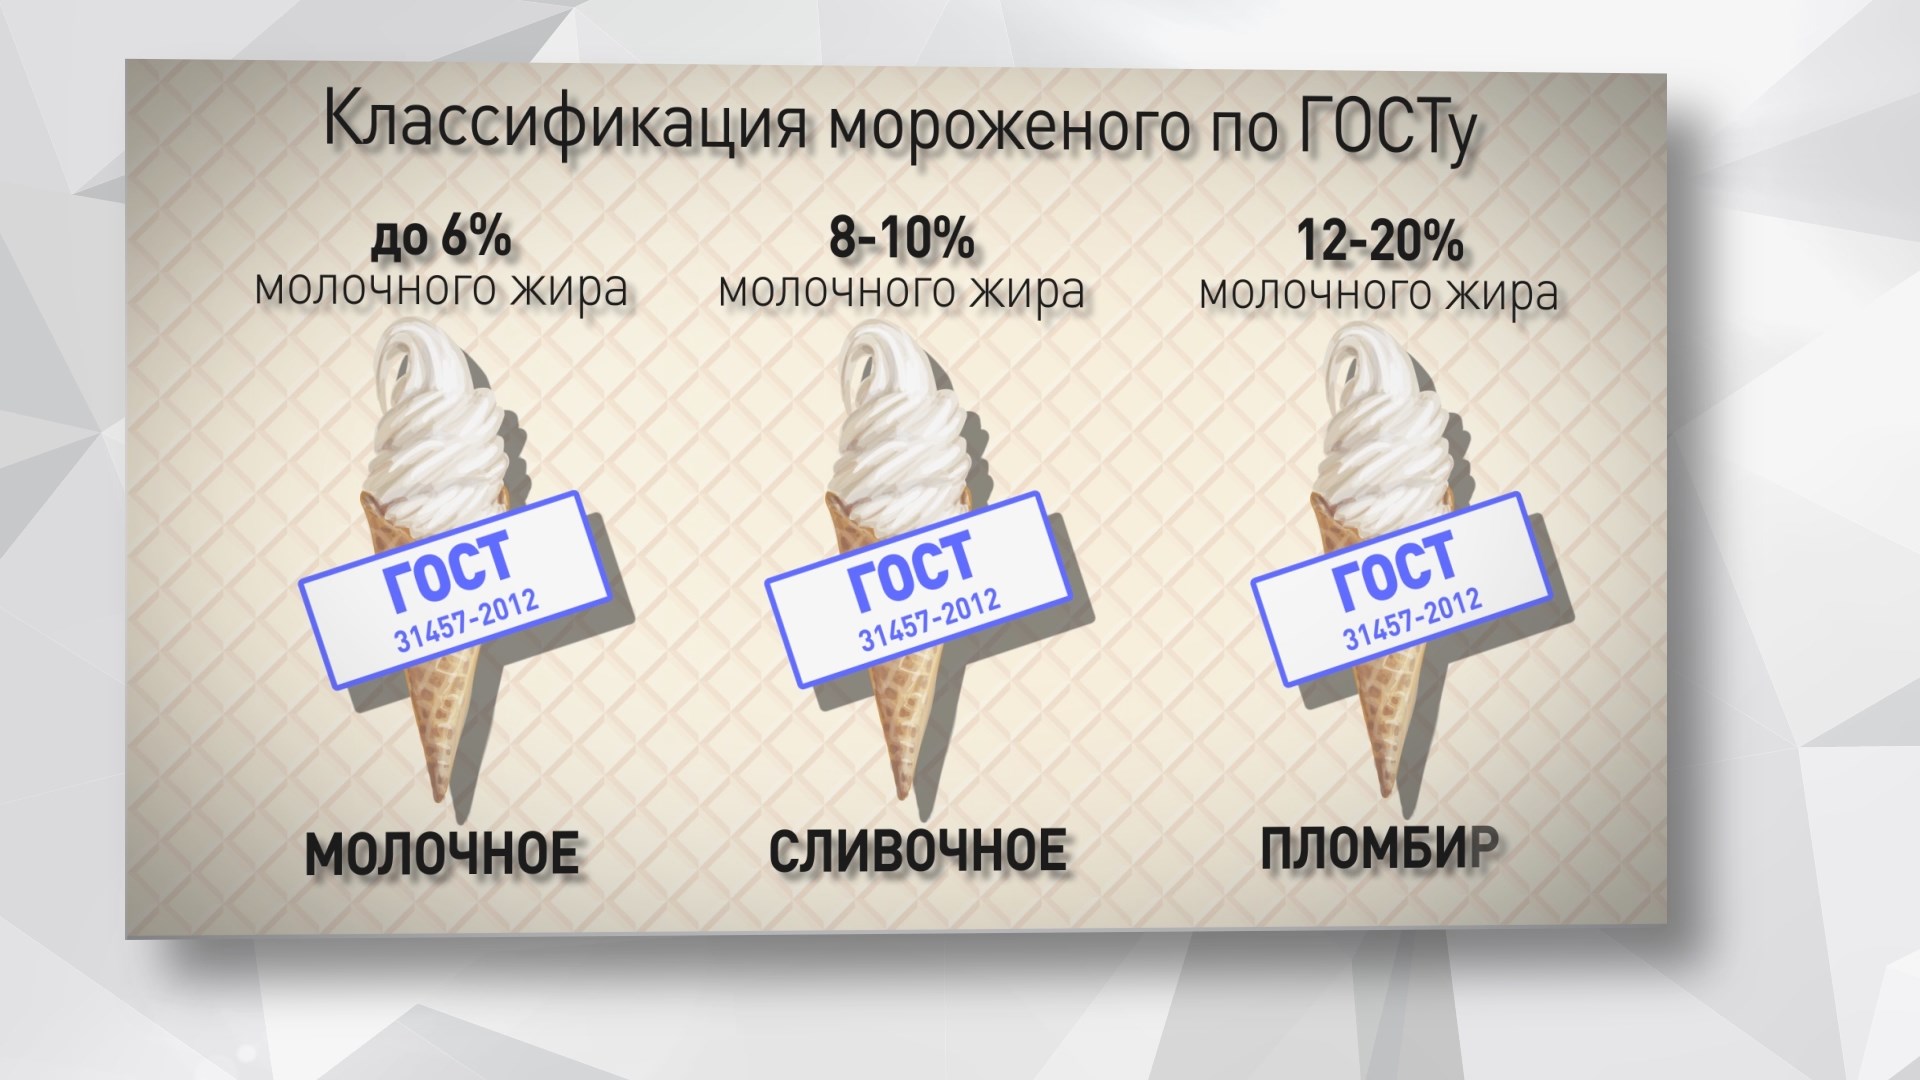 Мороженое анализ